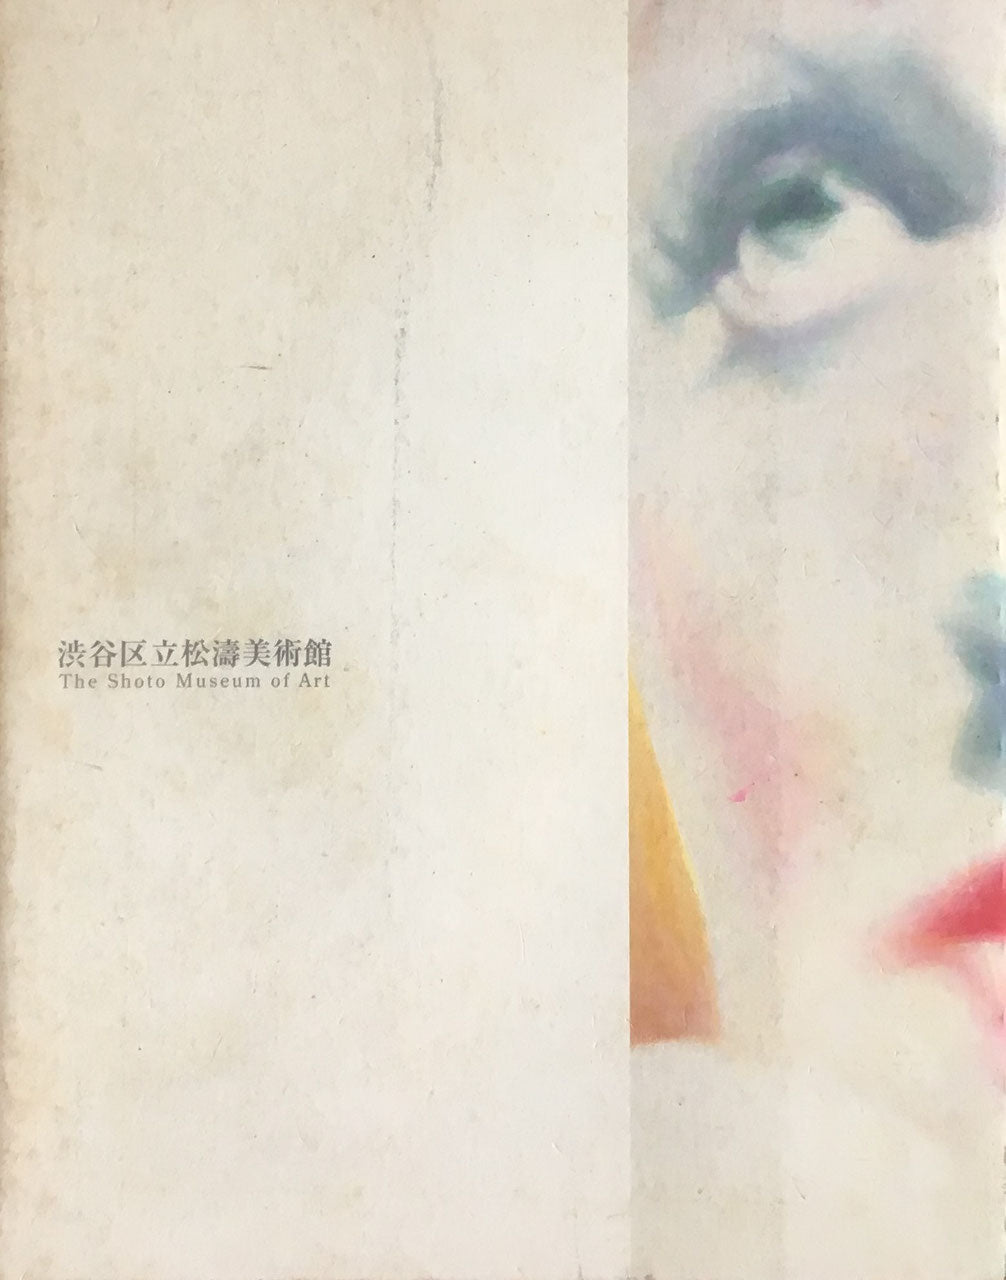 合田佐和子 影像 絵画・オブジェ・写真 1958-2003 松濤美術館 献呈署名